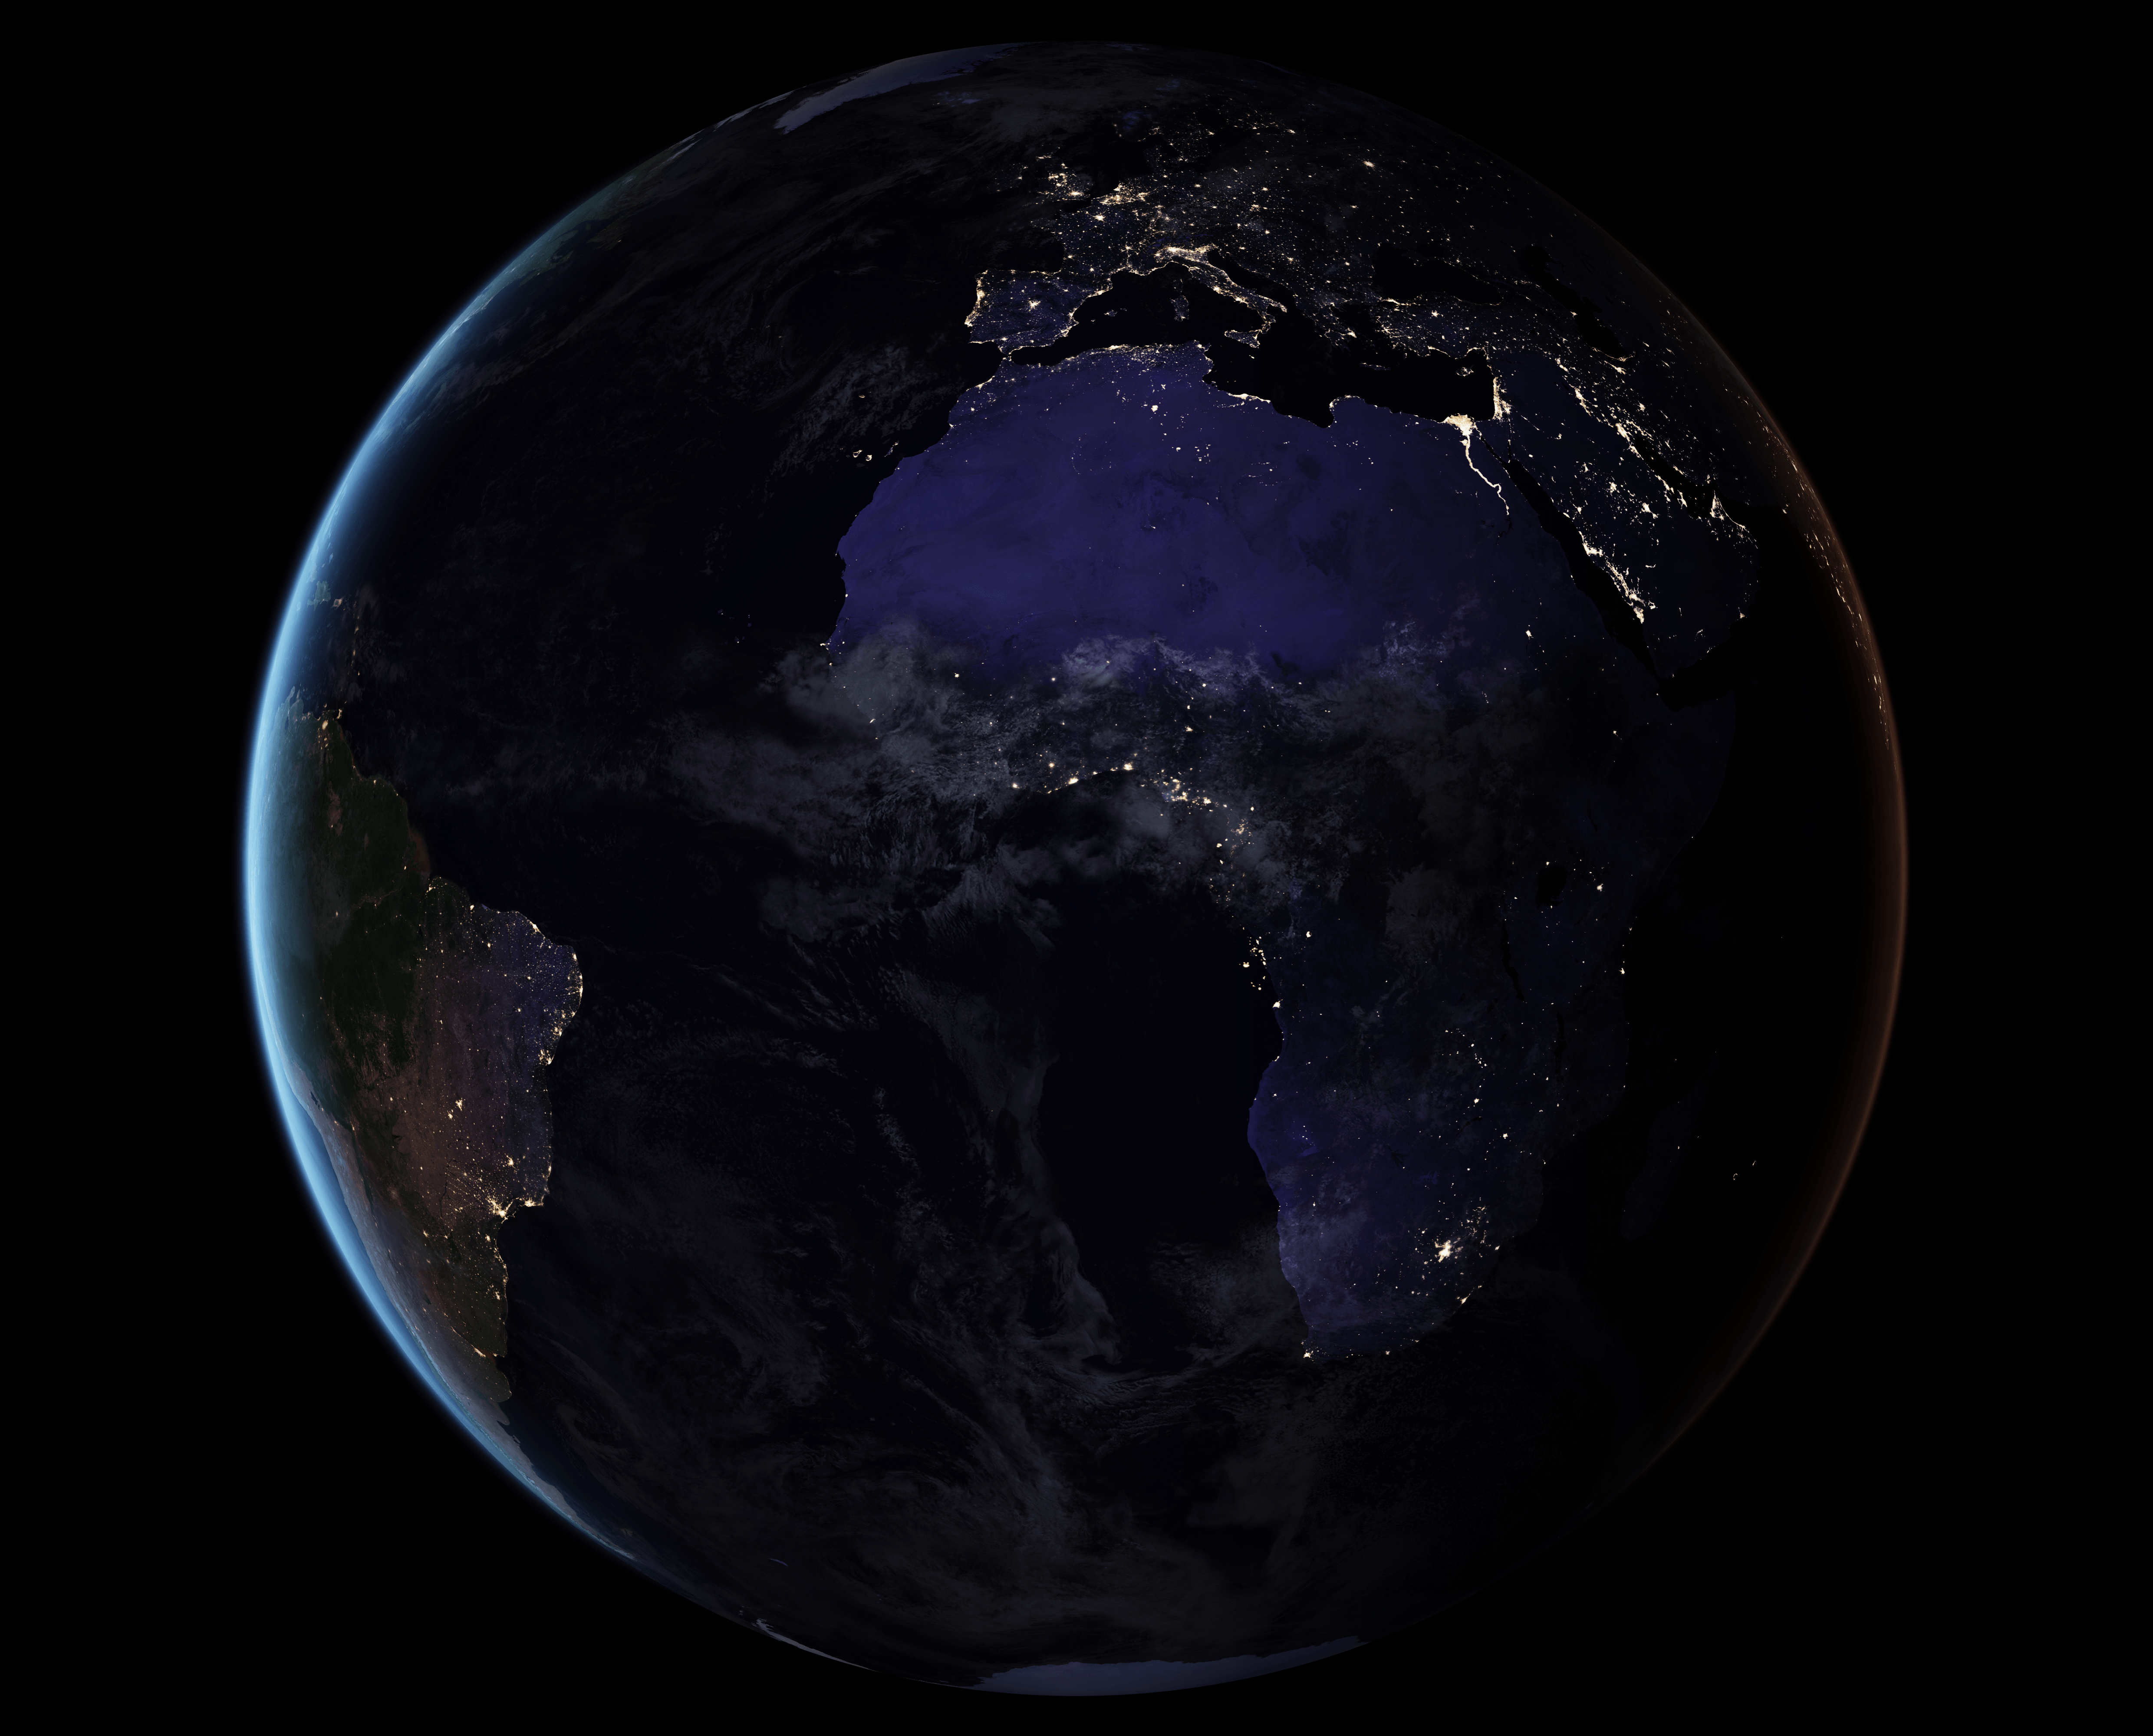 Stunning Earth Night Lights Wallpaper from NASA